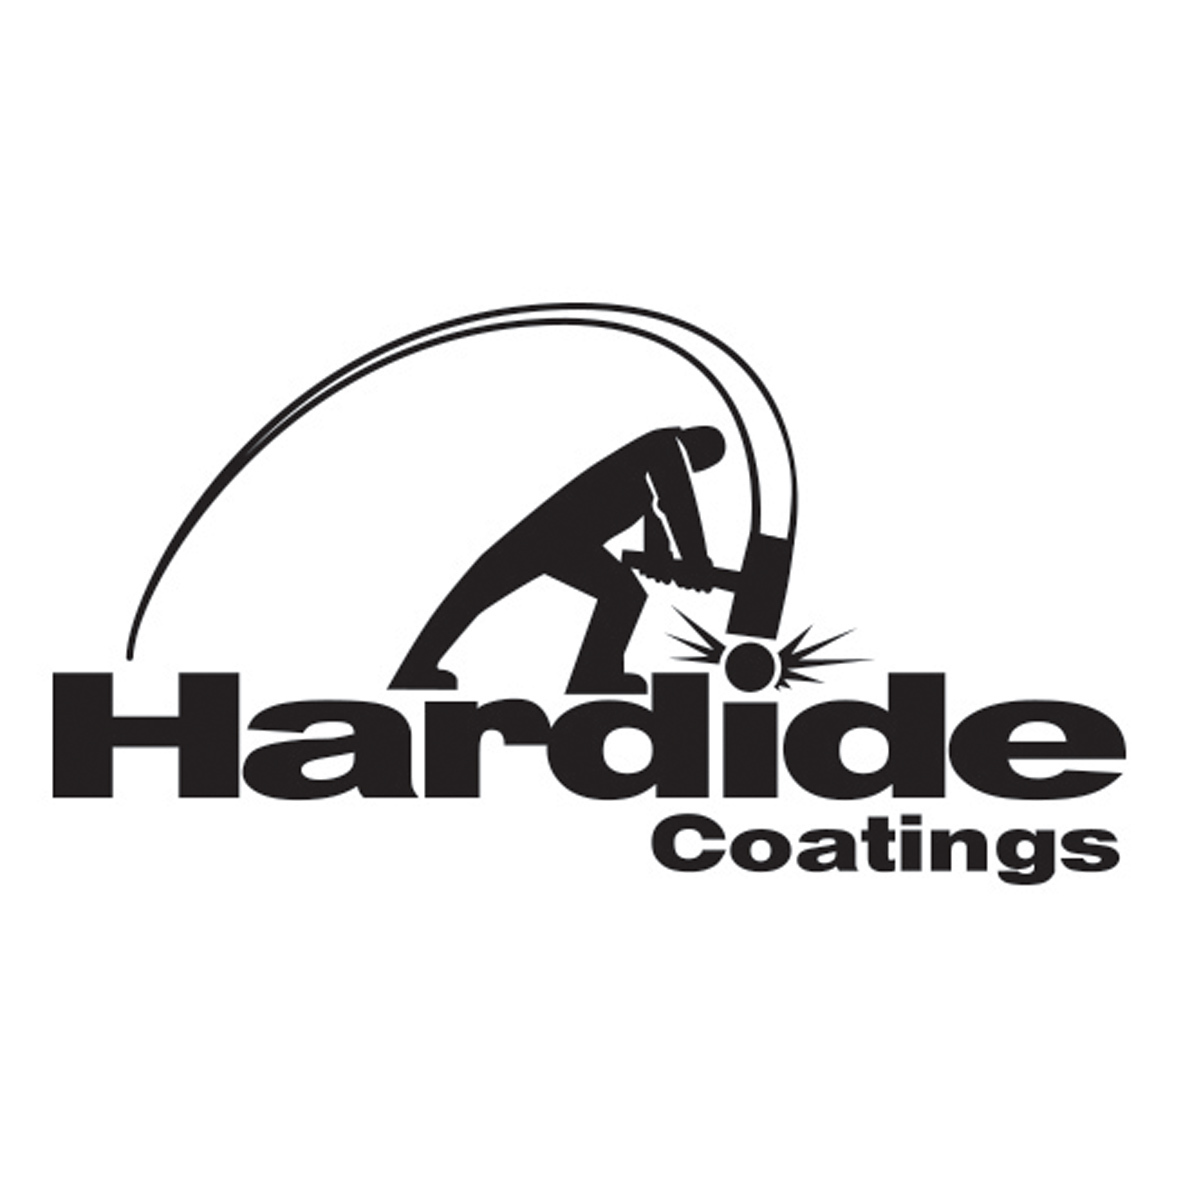 Hardide Coatings